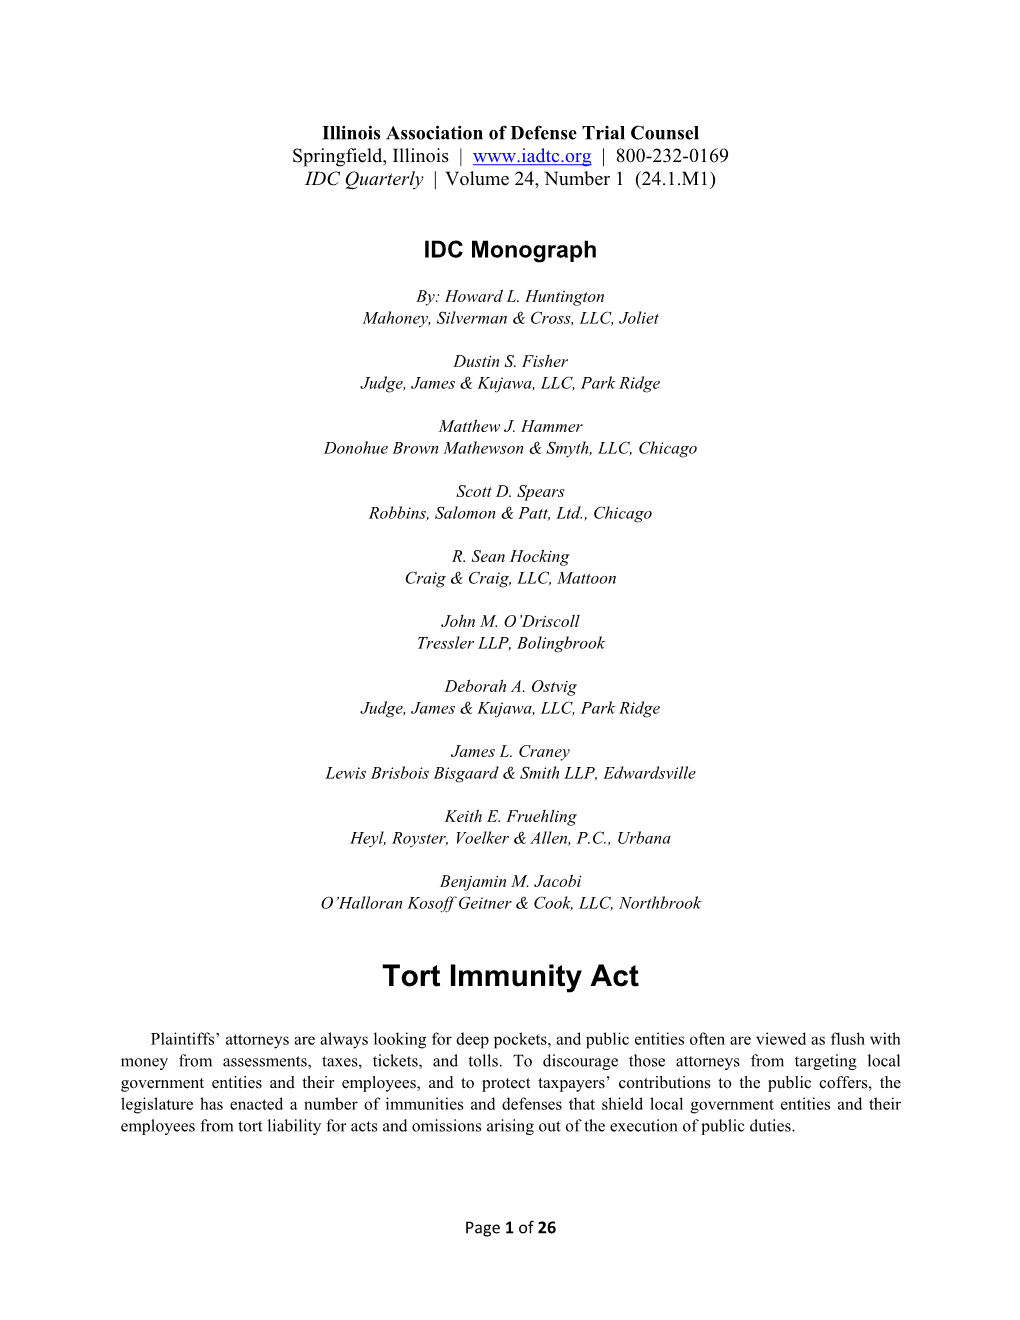 Tort Immunity Act